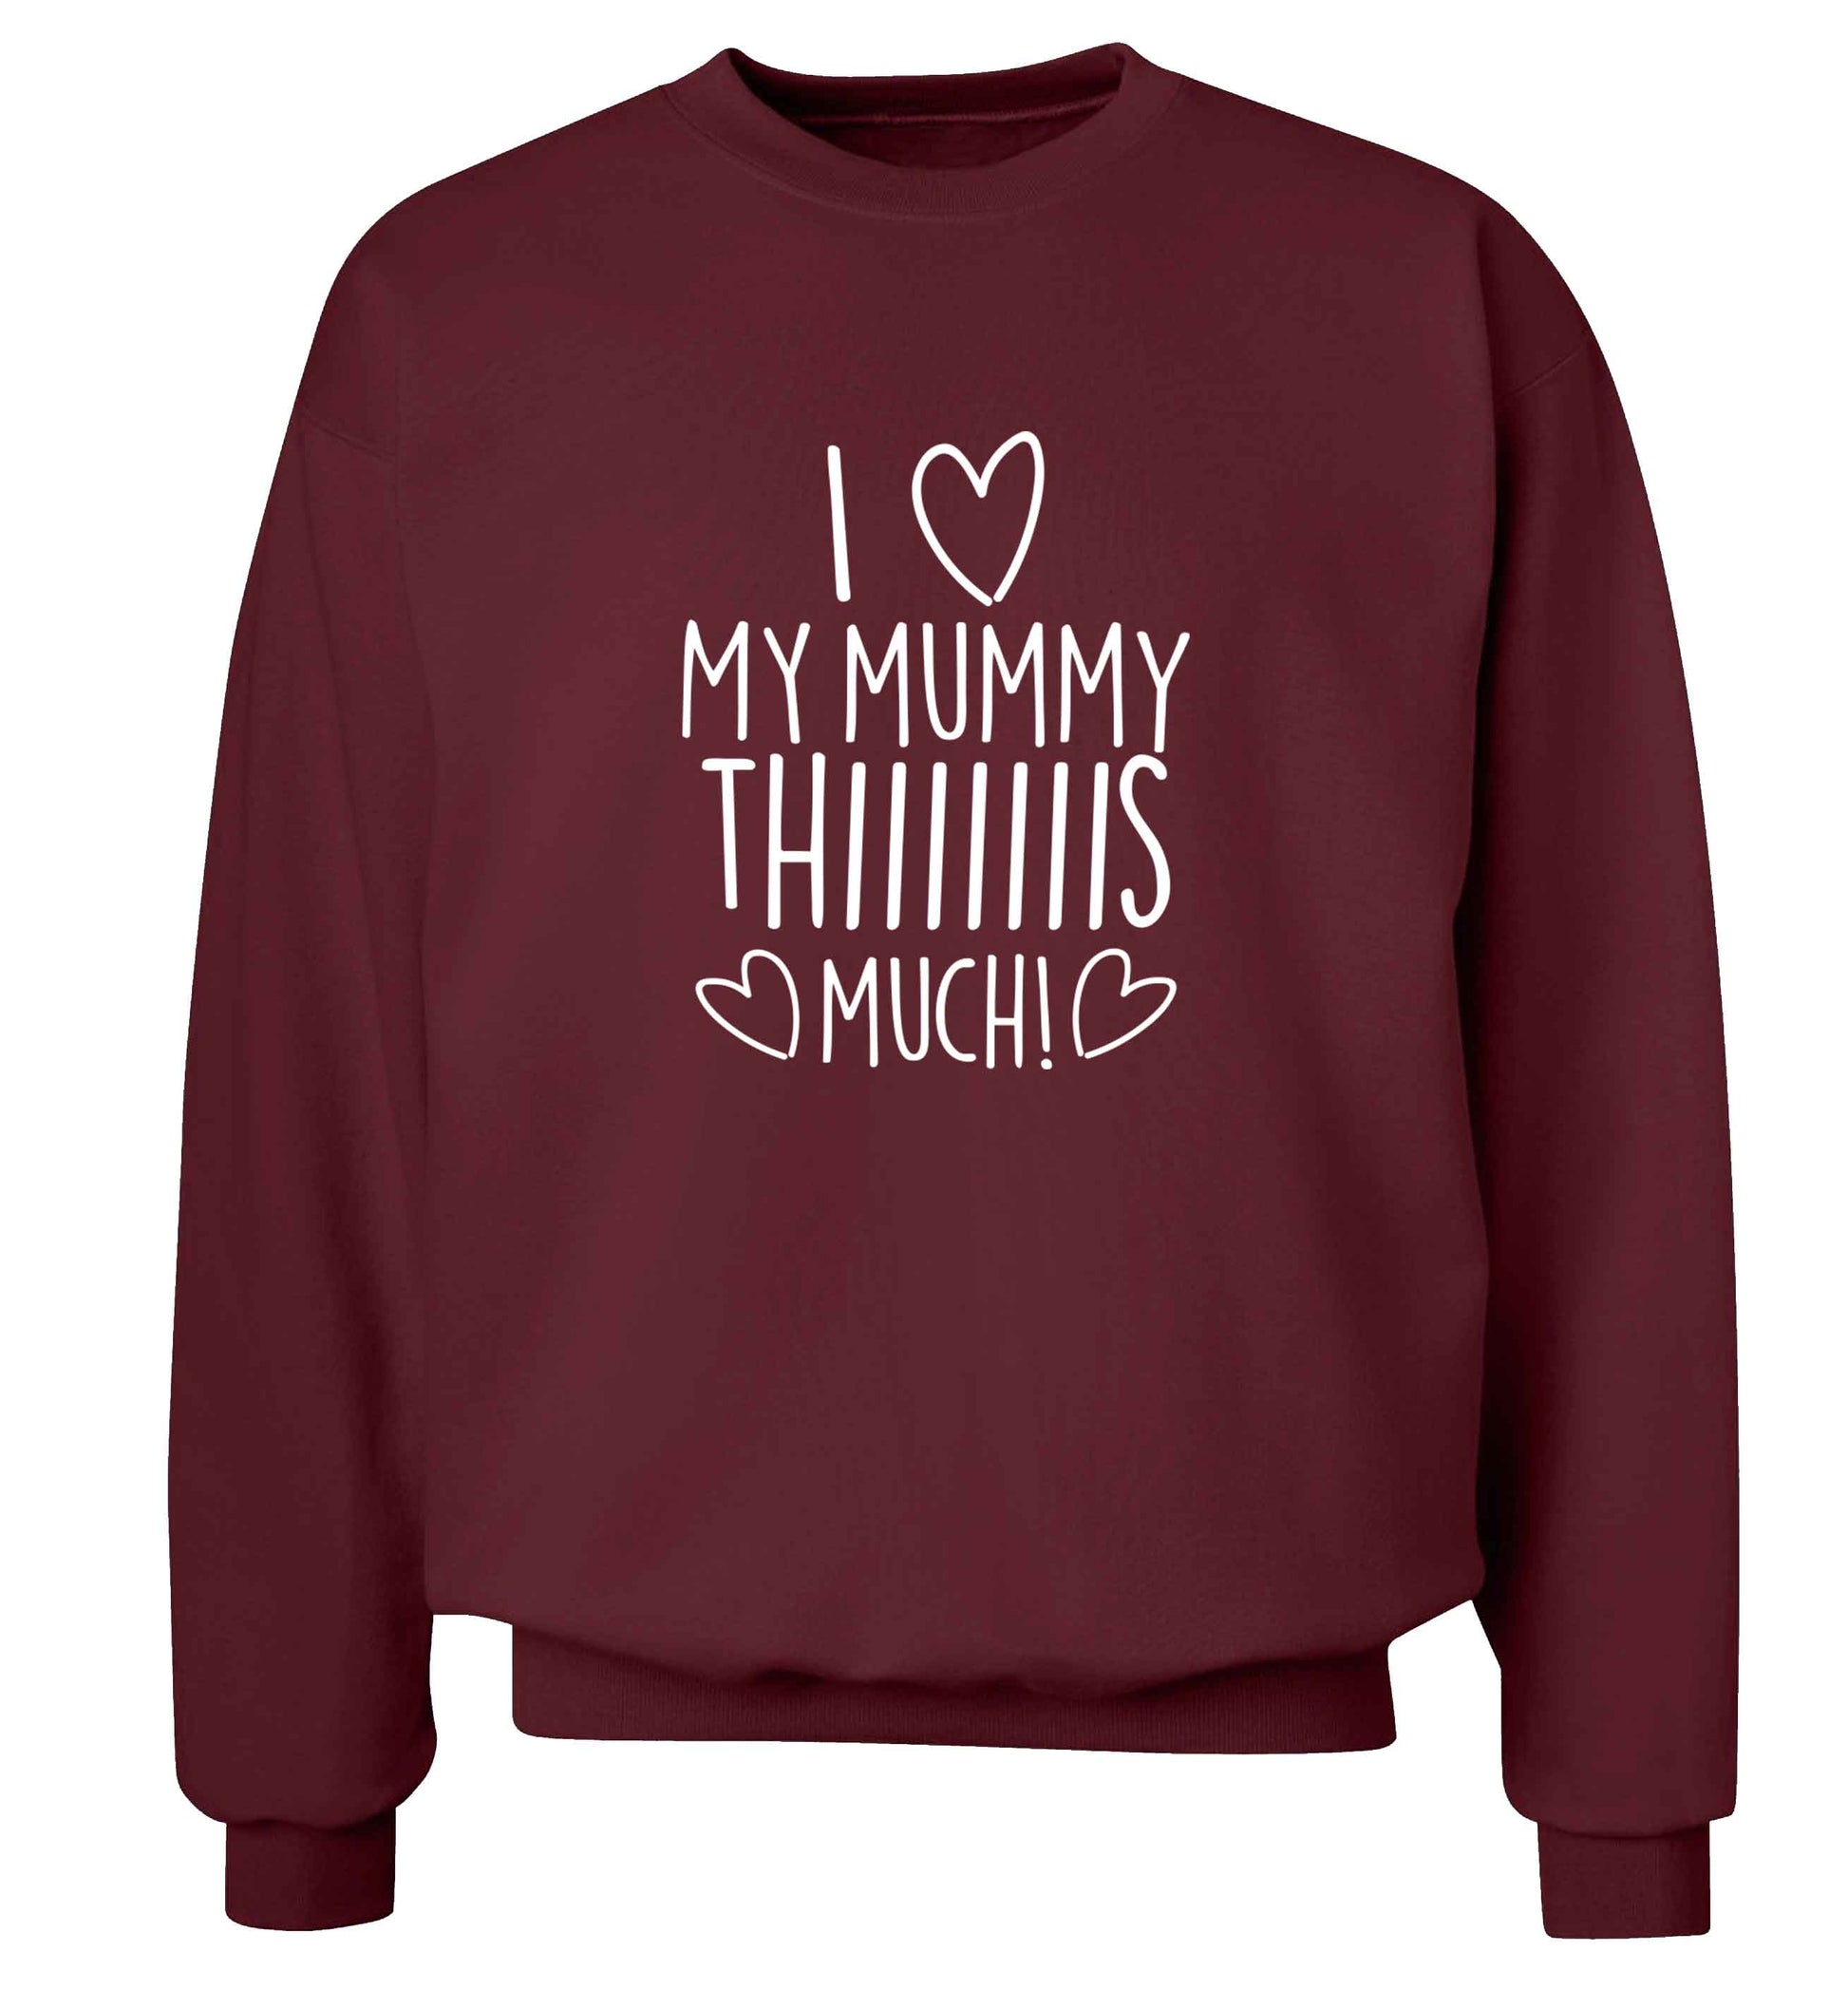 I love my mummy thiiiiis much! adult's unisex maroon sweater 2XL